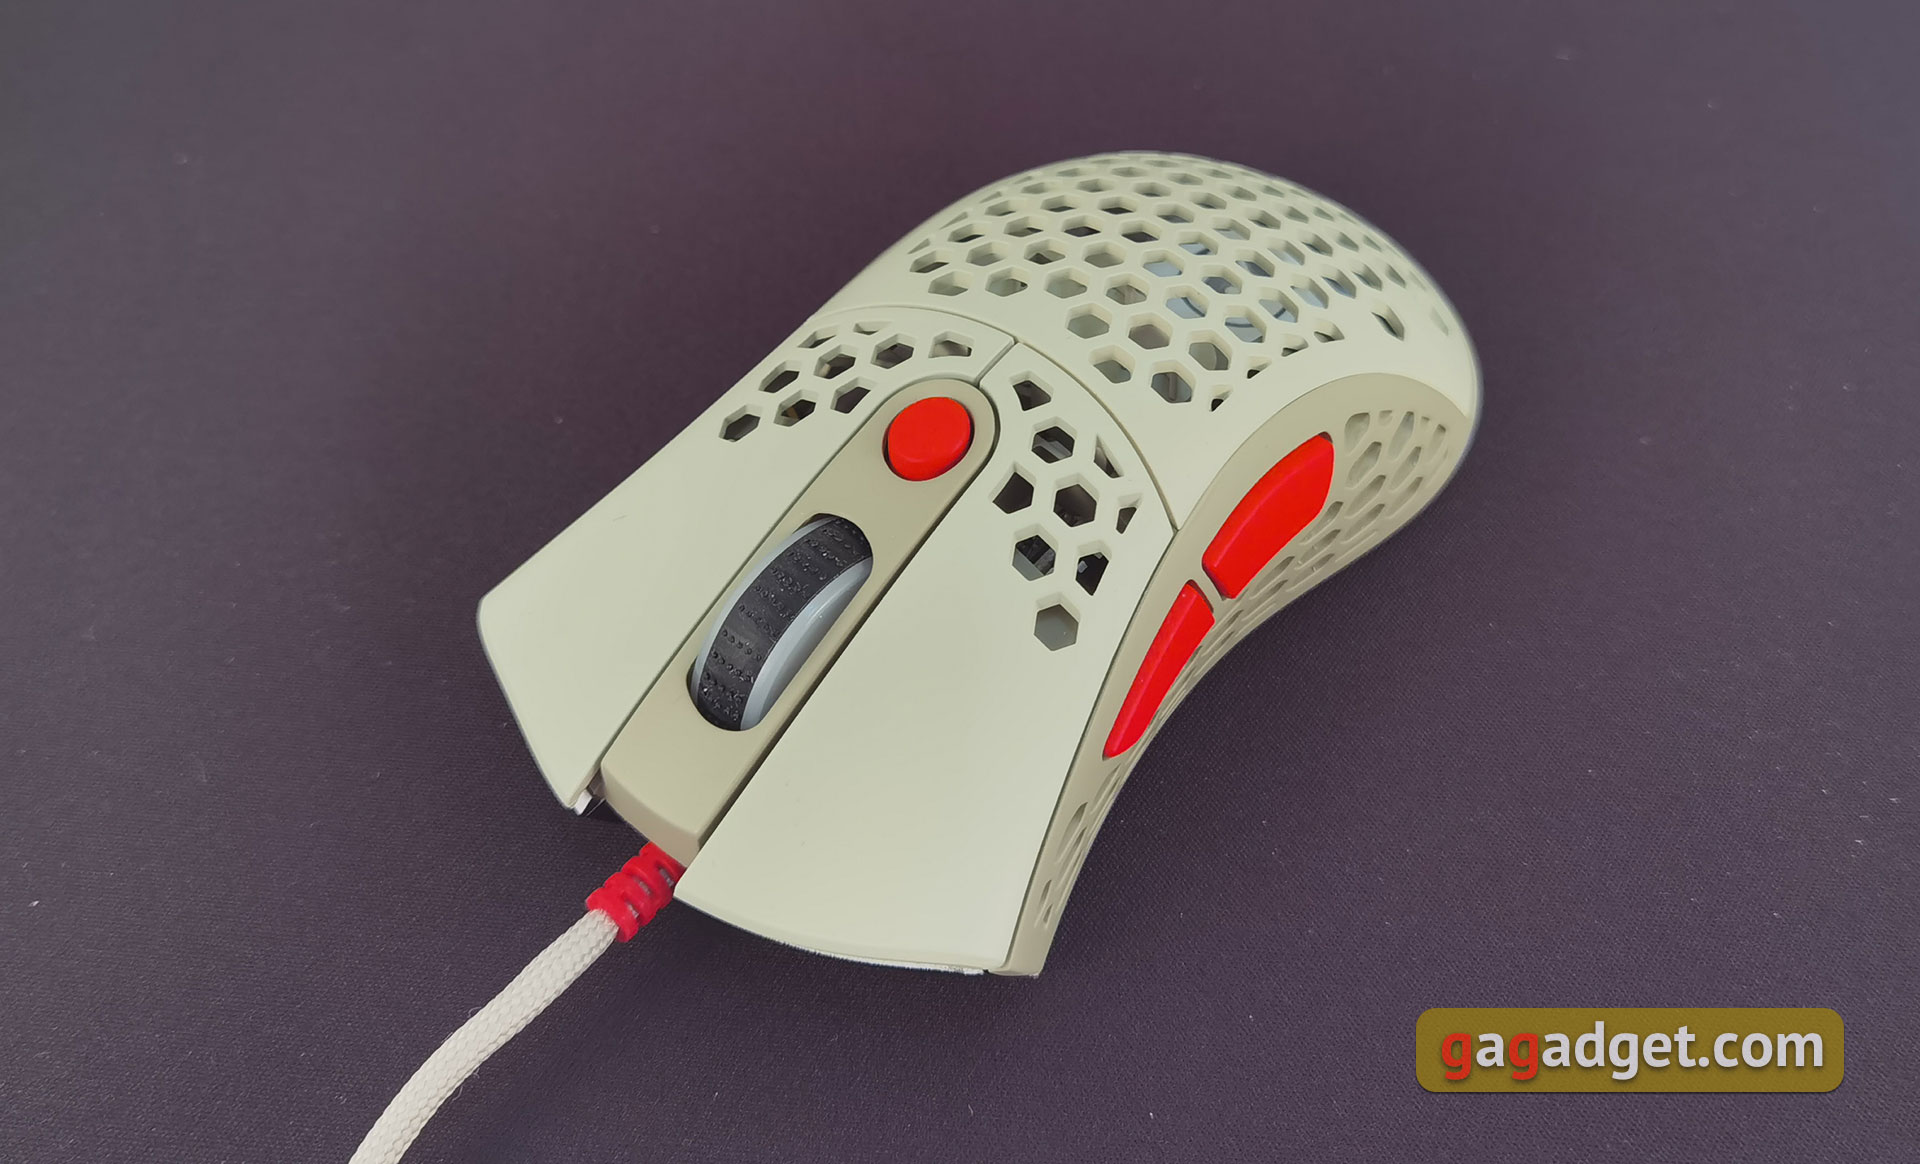 2E Gaming HyperSpeed Pro Überblick: Eine leichte Gaming-Maus mit einem großartigen Sensor-18